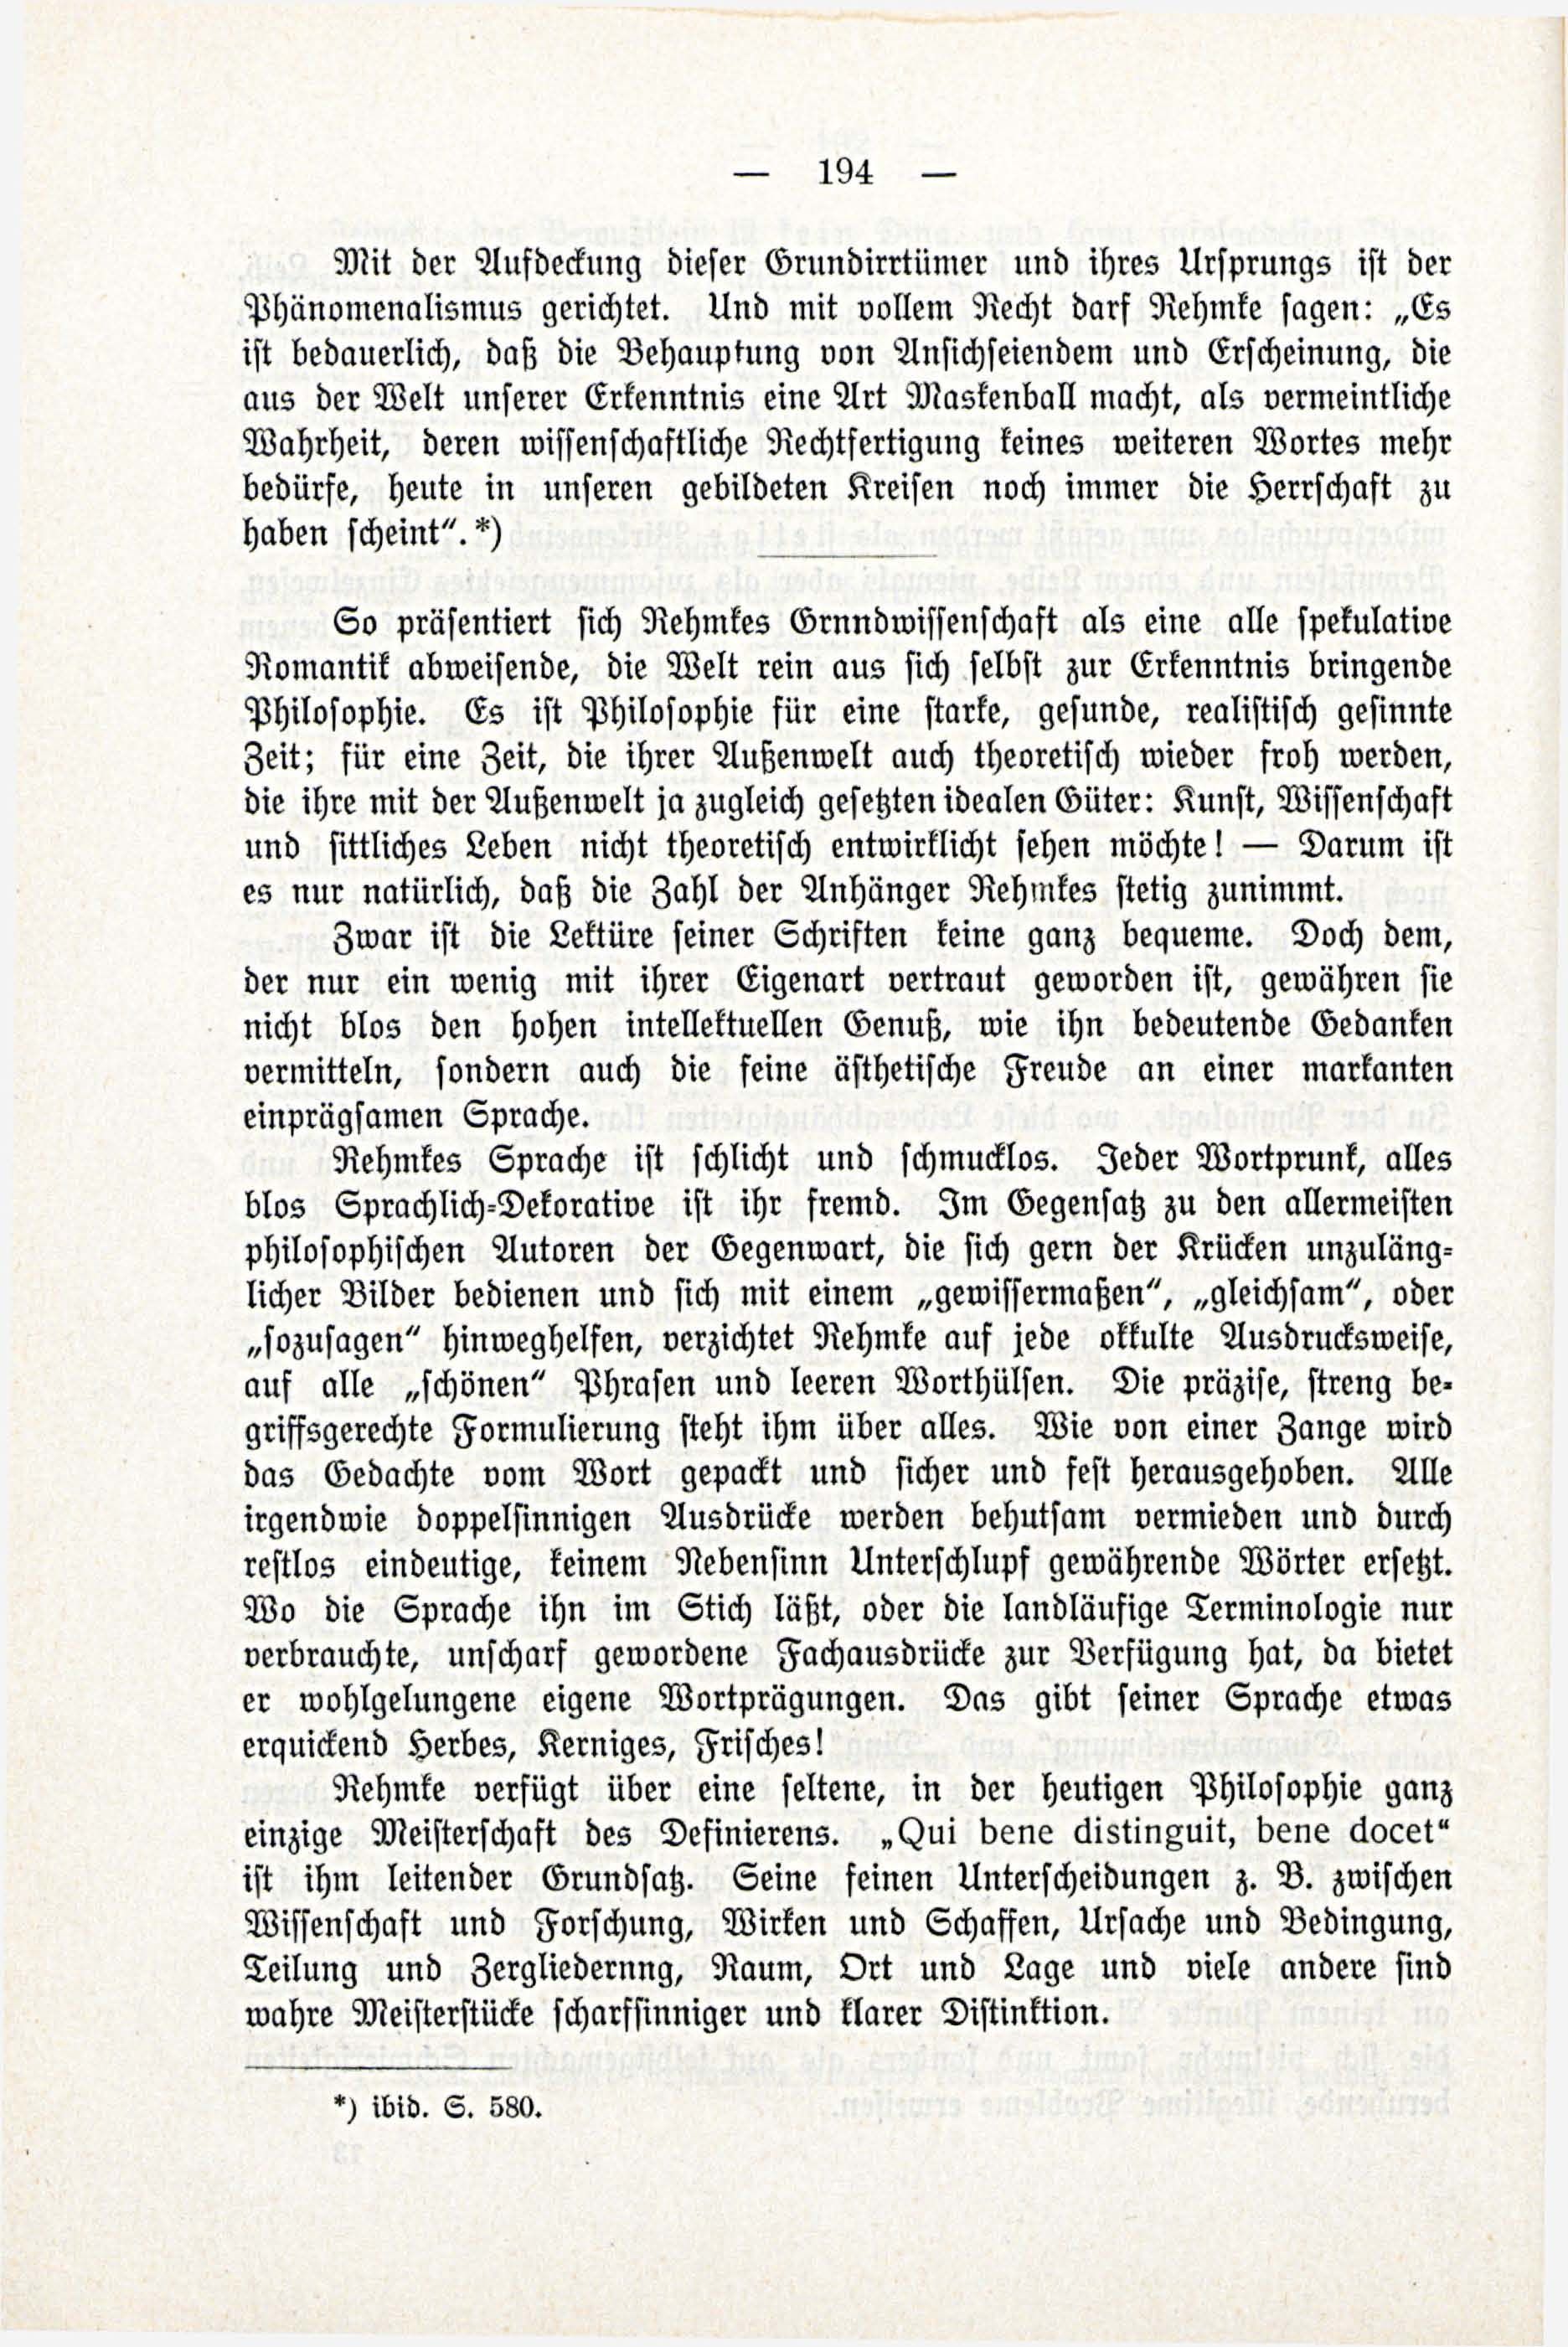 Deutsche Monatsschrift für Russland [3/03] (1914) | 40. (194) Main body of text